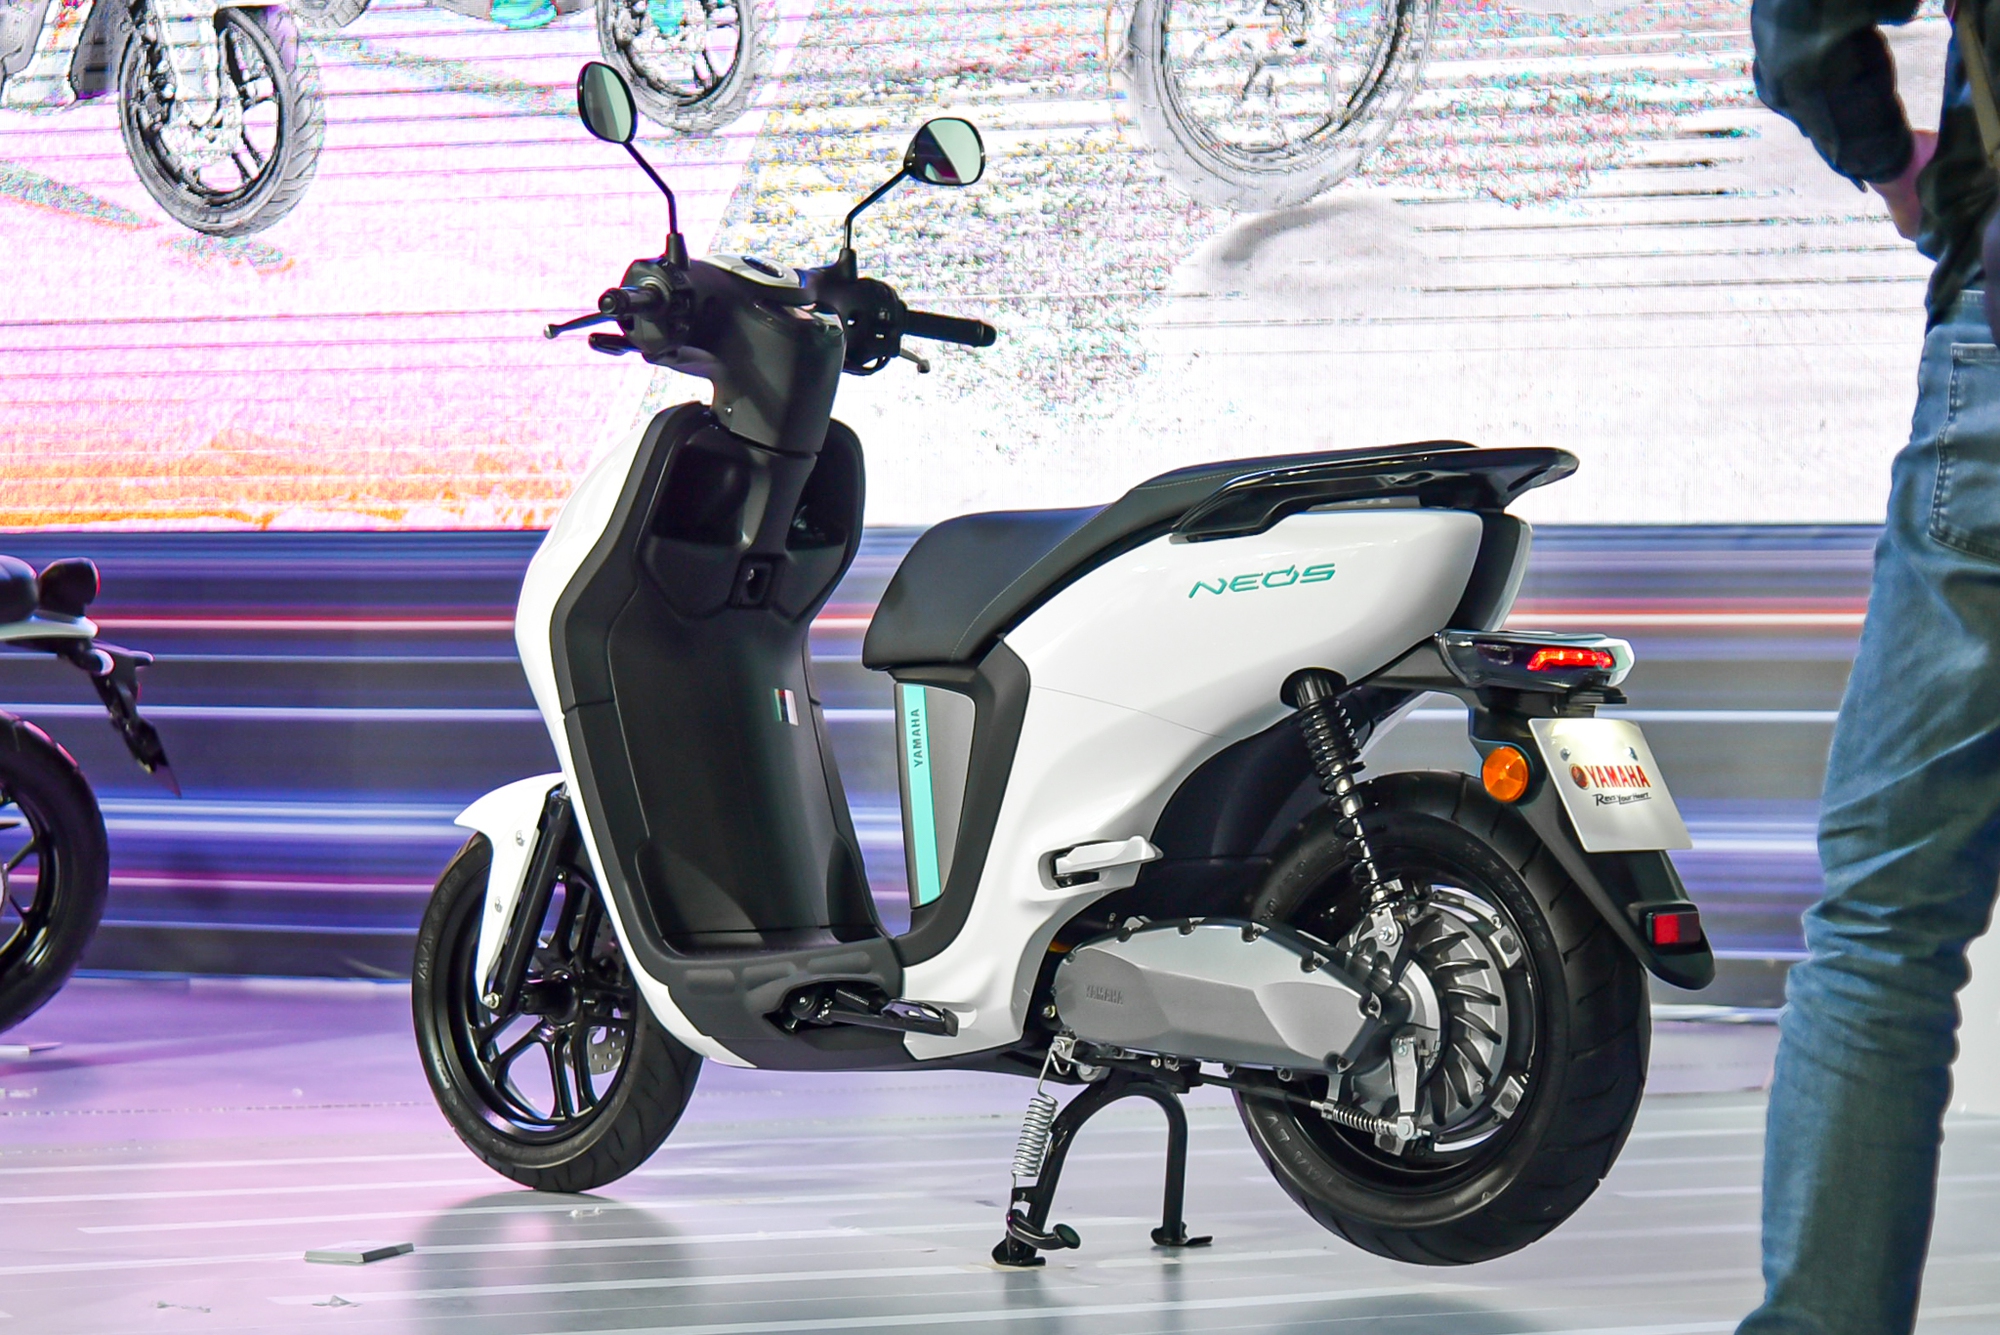 Yamaha Neo's ra mắt Việt Nam: Giá 50 triệu đồng, có thể đi tối đa 144 km, cạnh tranh VinFast Vento S - Ảnh 2.